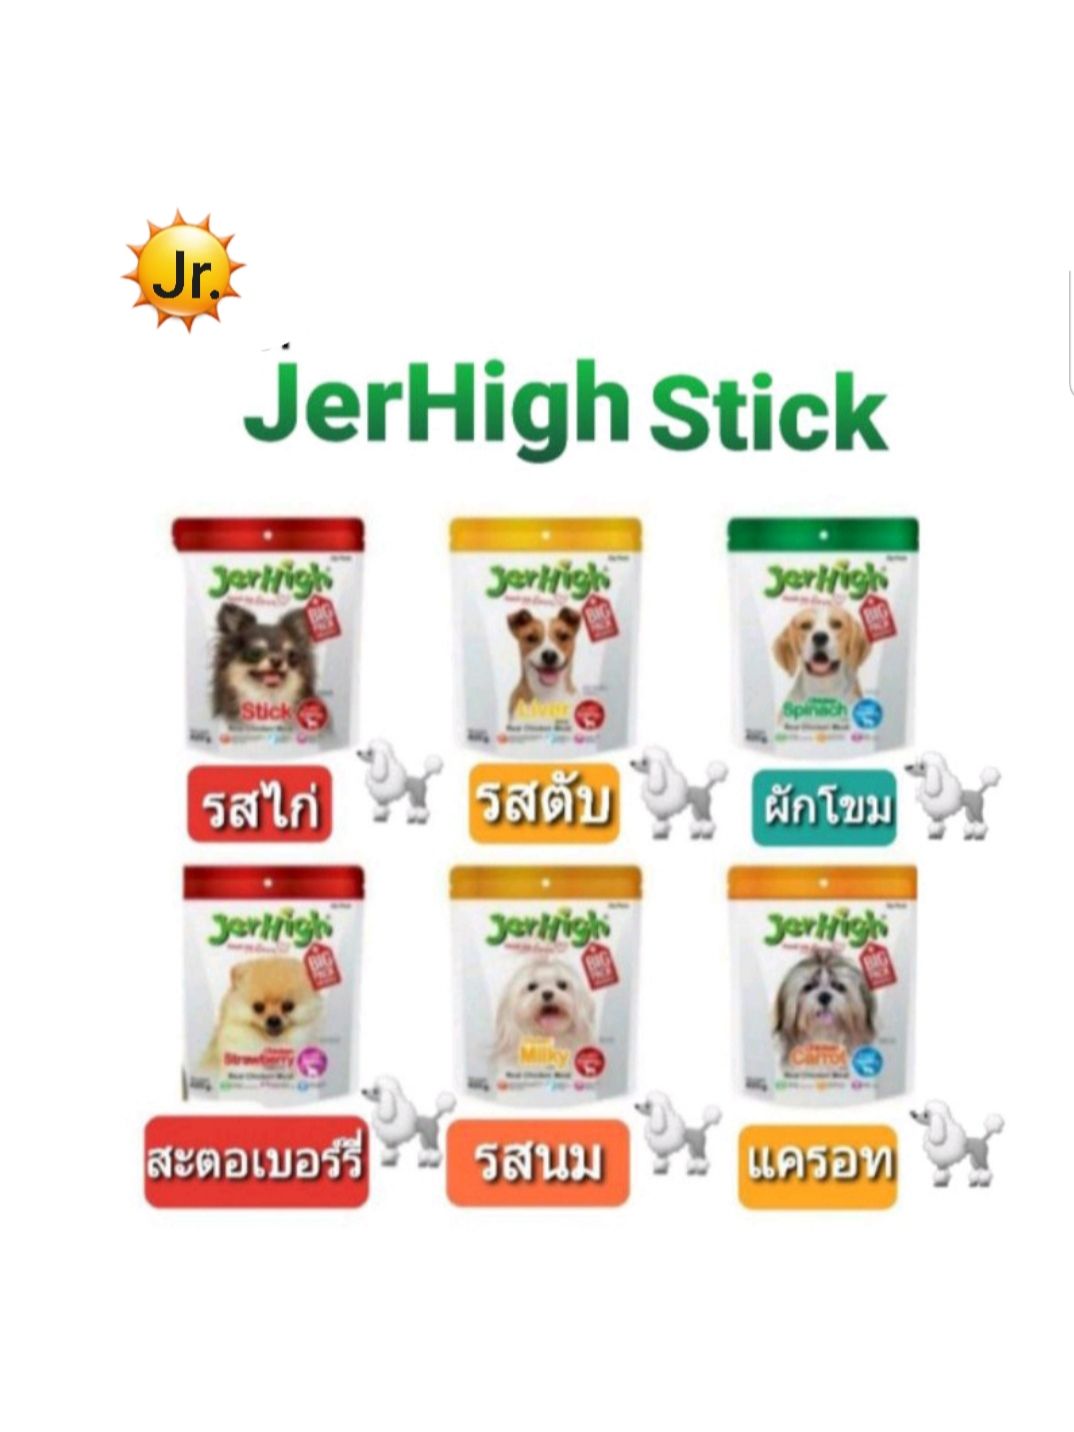 JerHigh Stick เจอร์ไฮสติ๊ก ขนมสุนัขขนาด 420 g.